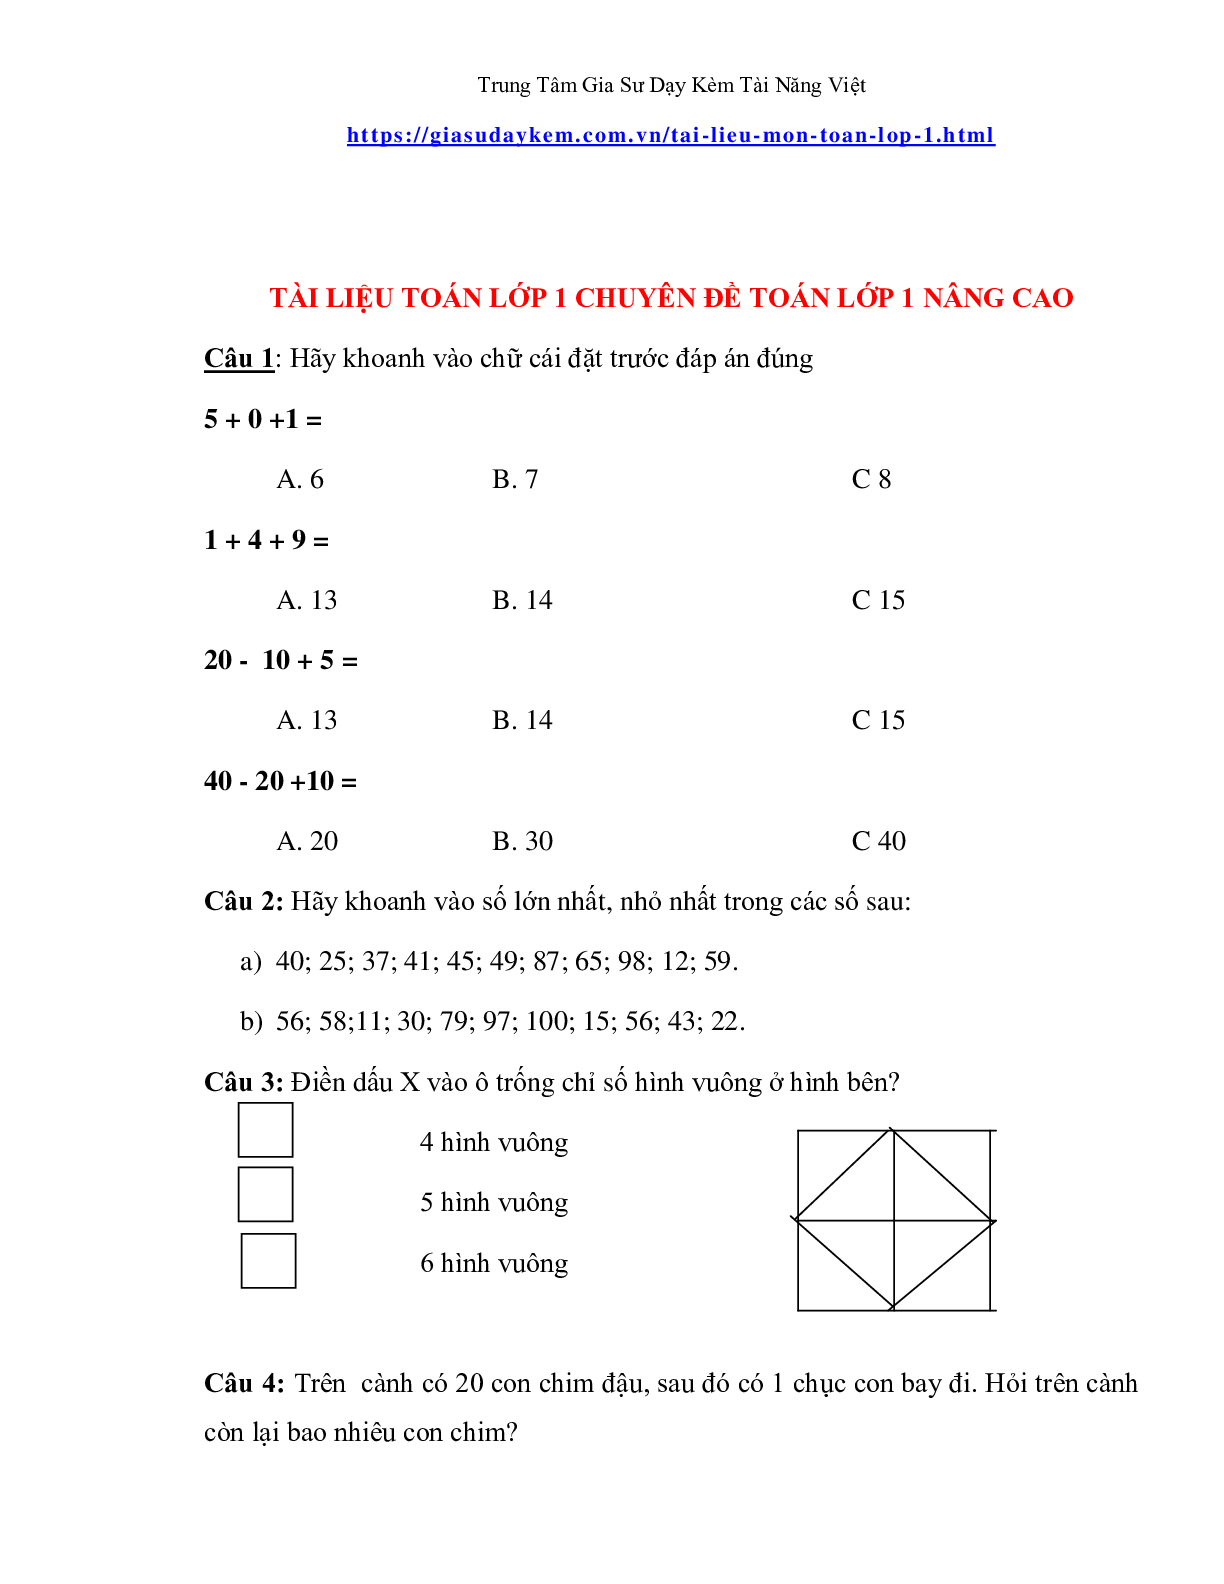 Đề thi toán lớp một nâng cao (trang 1)